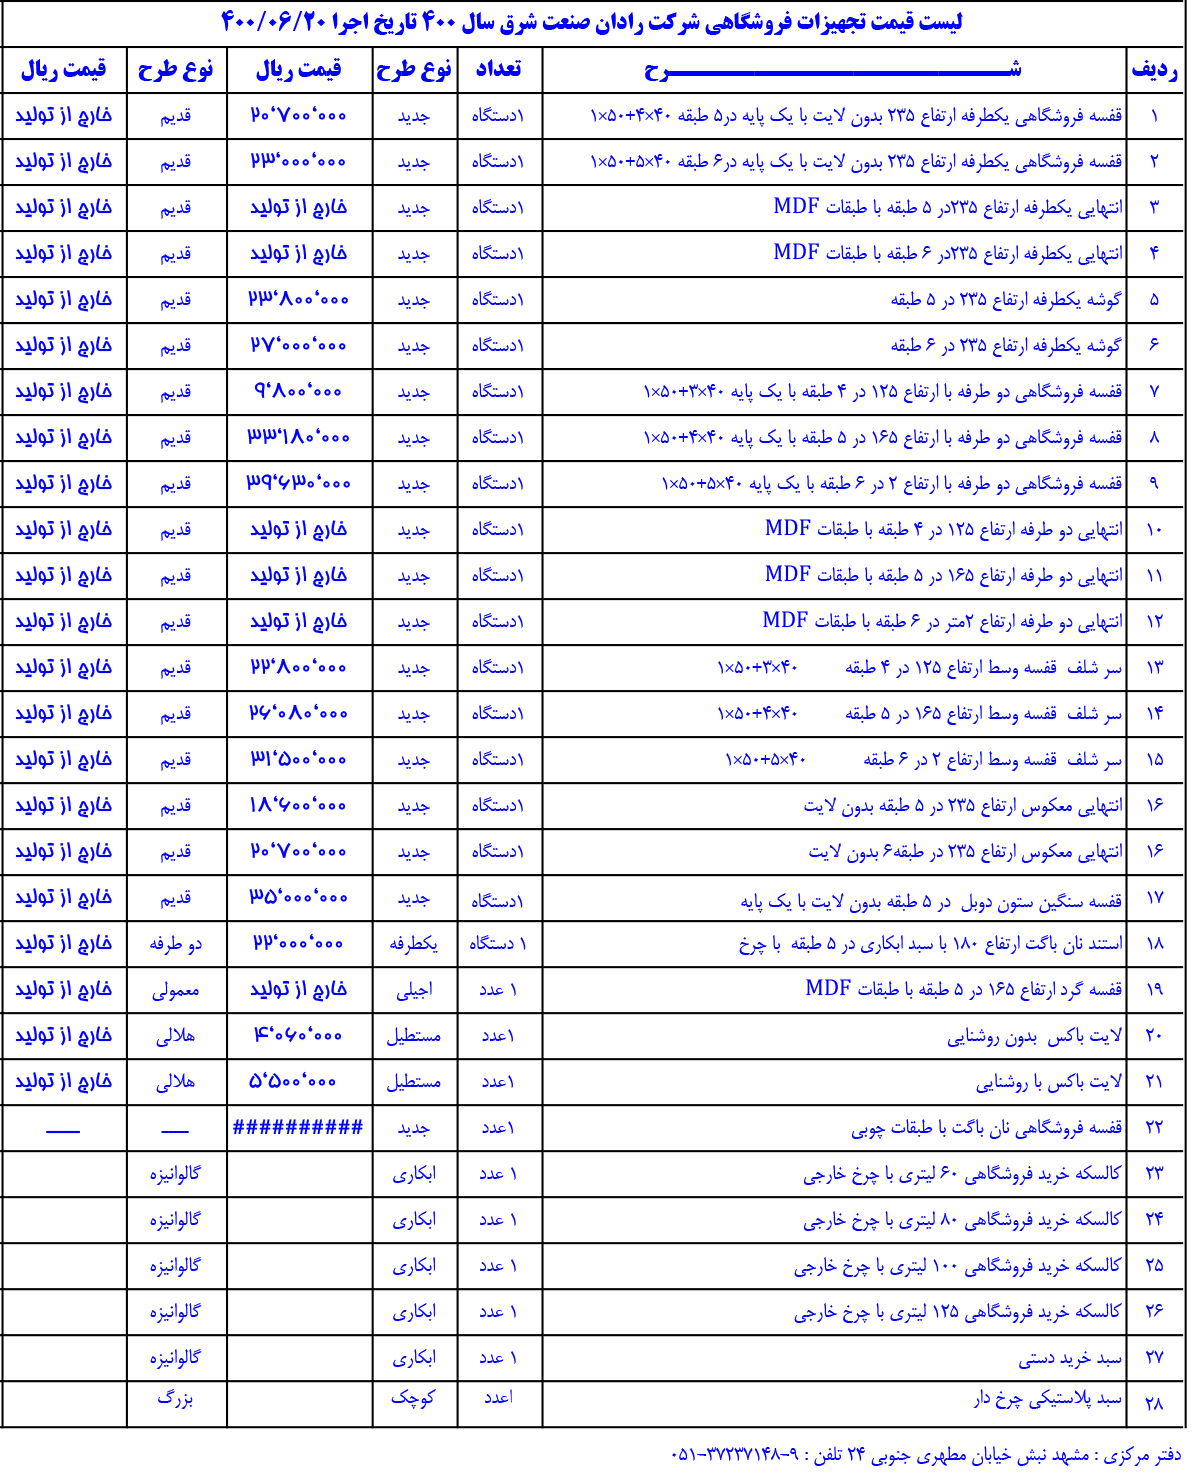 لیست قیمت تجهیزات و قفسه بندی فروشگاهی شرکت رادان صنعت شرق سال 1400 تاریخ 1400/06/20